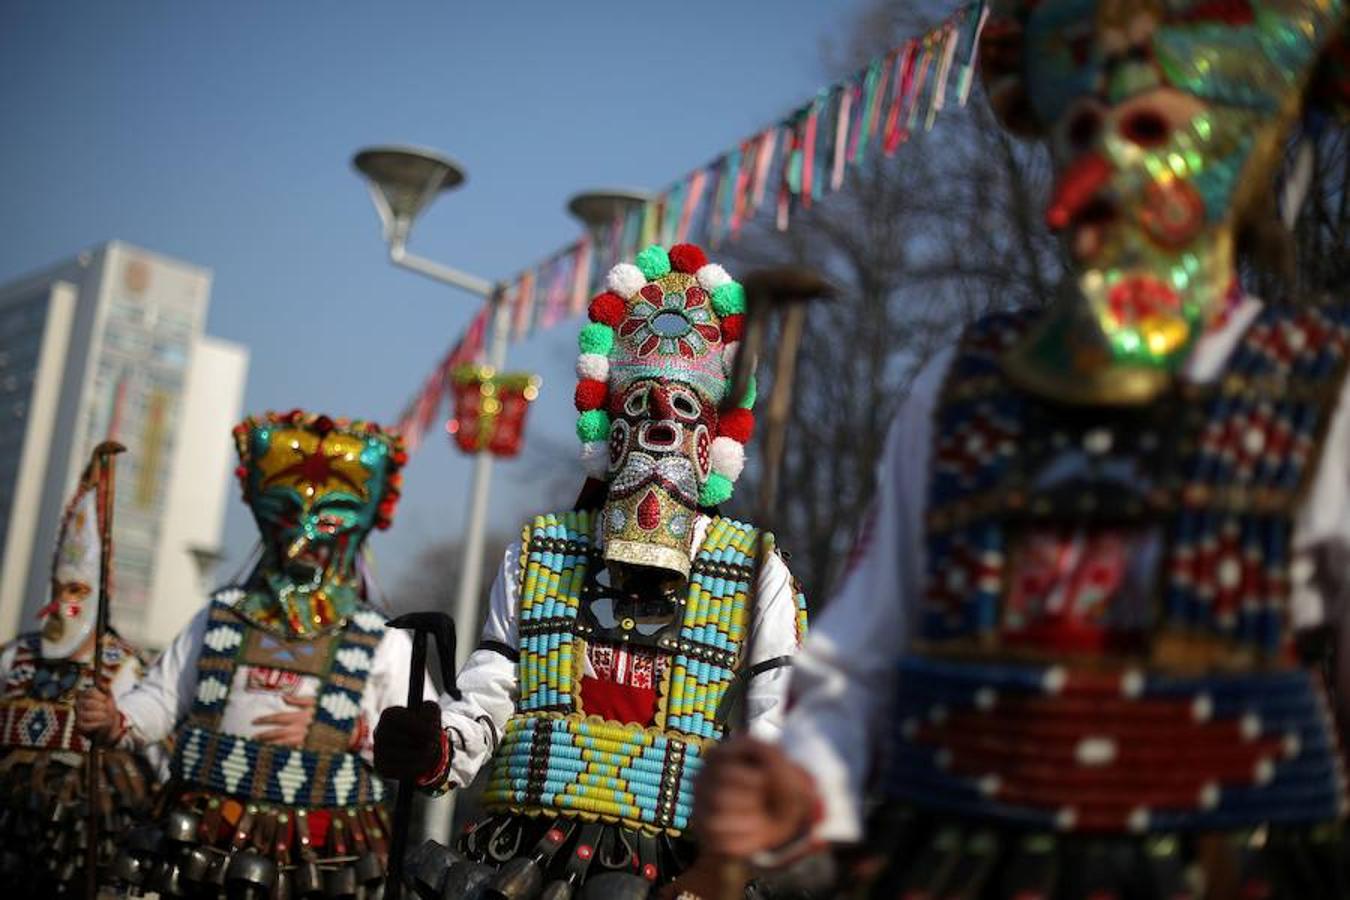 El Festival Internacional de Juegos de Máscaras 'Surva' tuvo lugar el pasado domingo 28 de diciembre en Pernik, Bulgaria. Más de 100 grupos de baile búlgaros y de otros países participaron en este popular festejo.